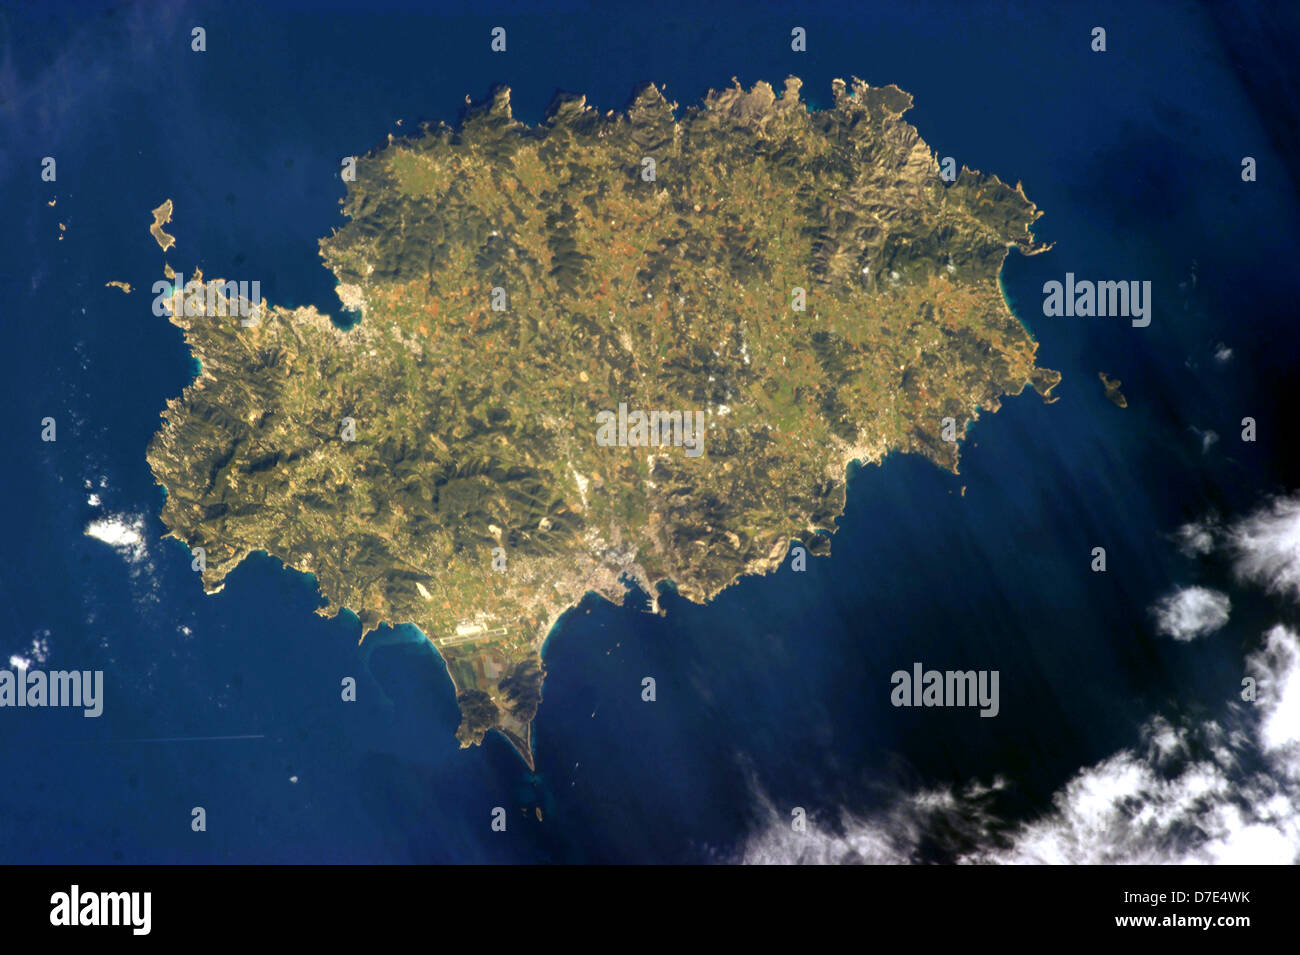 Ibiza. Die Insel Ibiza von der südöstlichen Küste von Spanien, Teil des Archipels der Balearen. Stockfoto